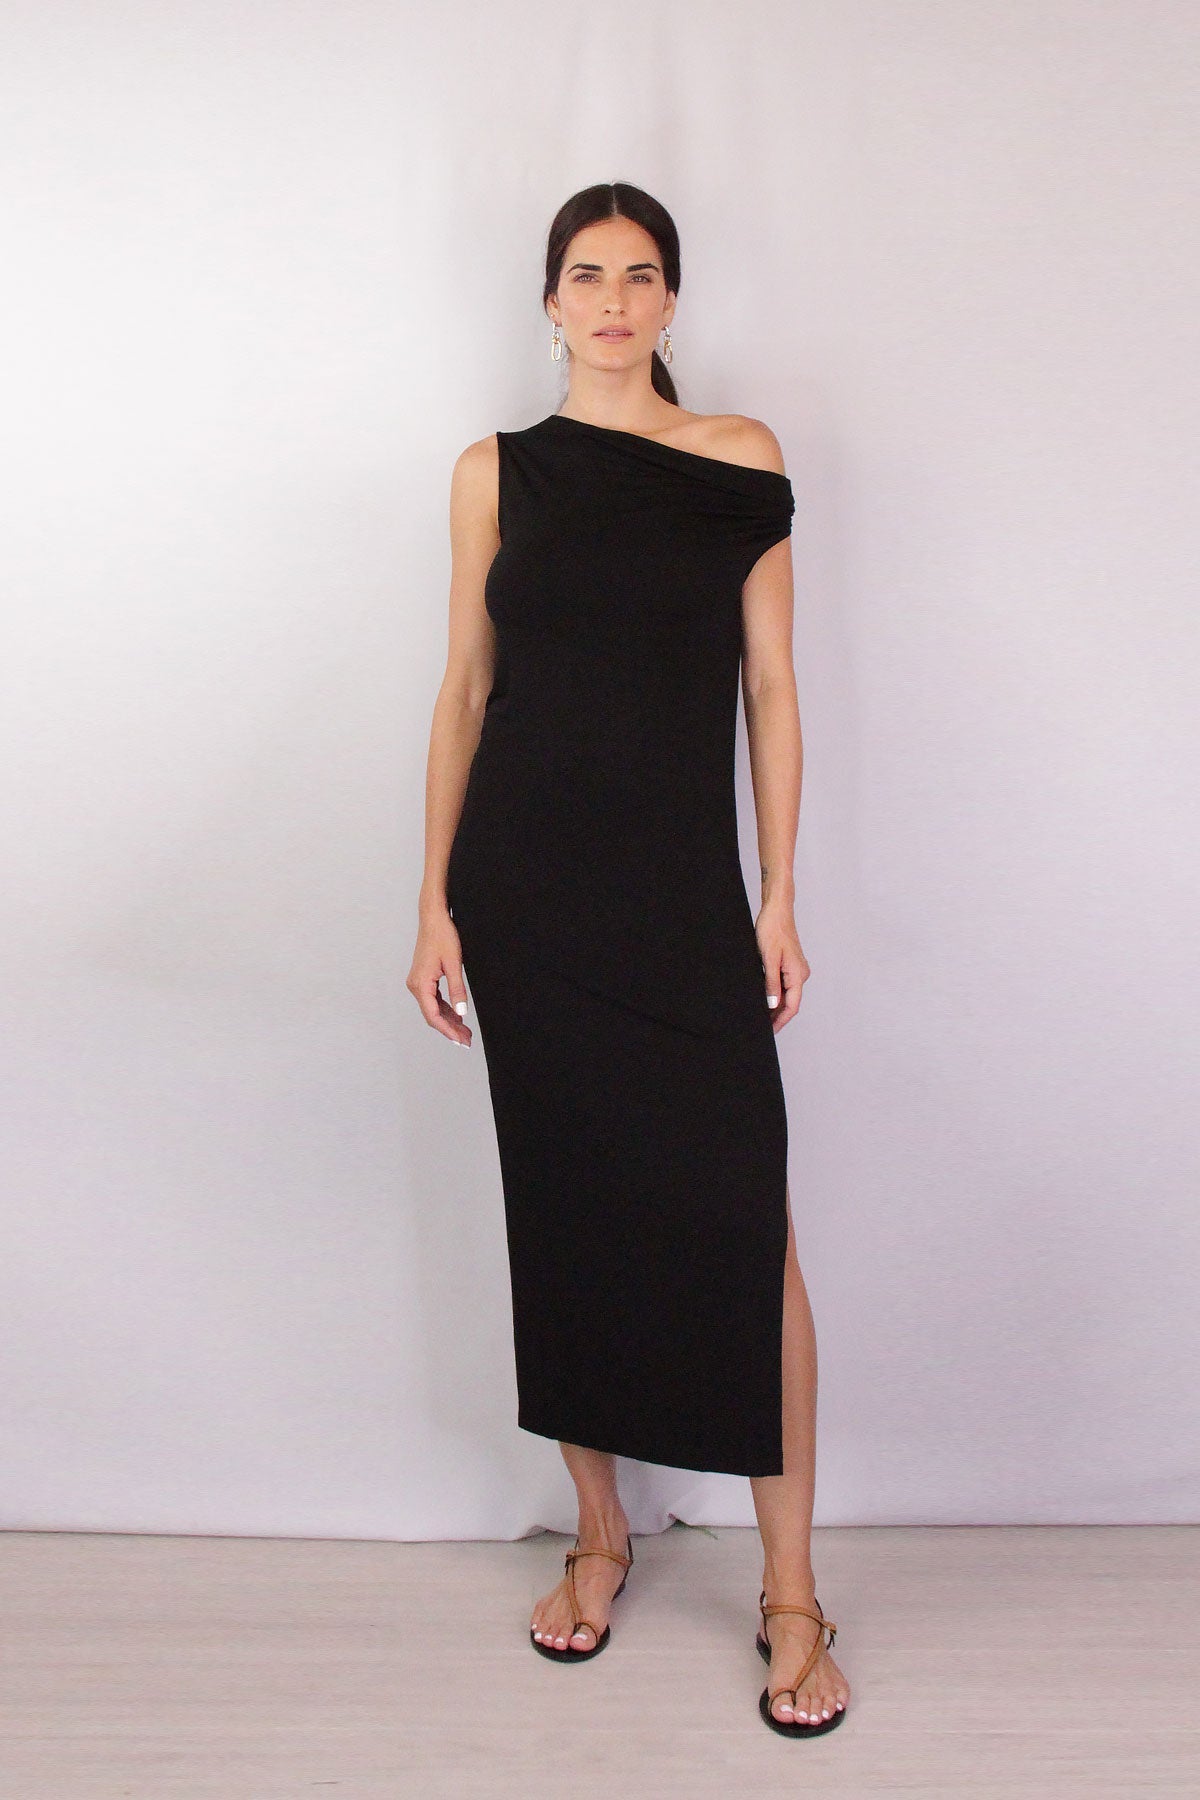 Exposed Shoulder Ankle Length Dress in Black - shop-olivia.com